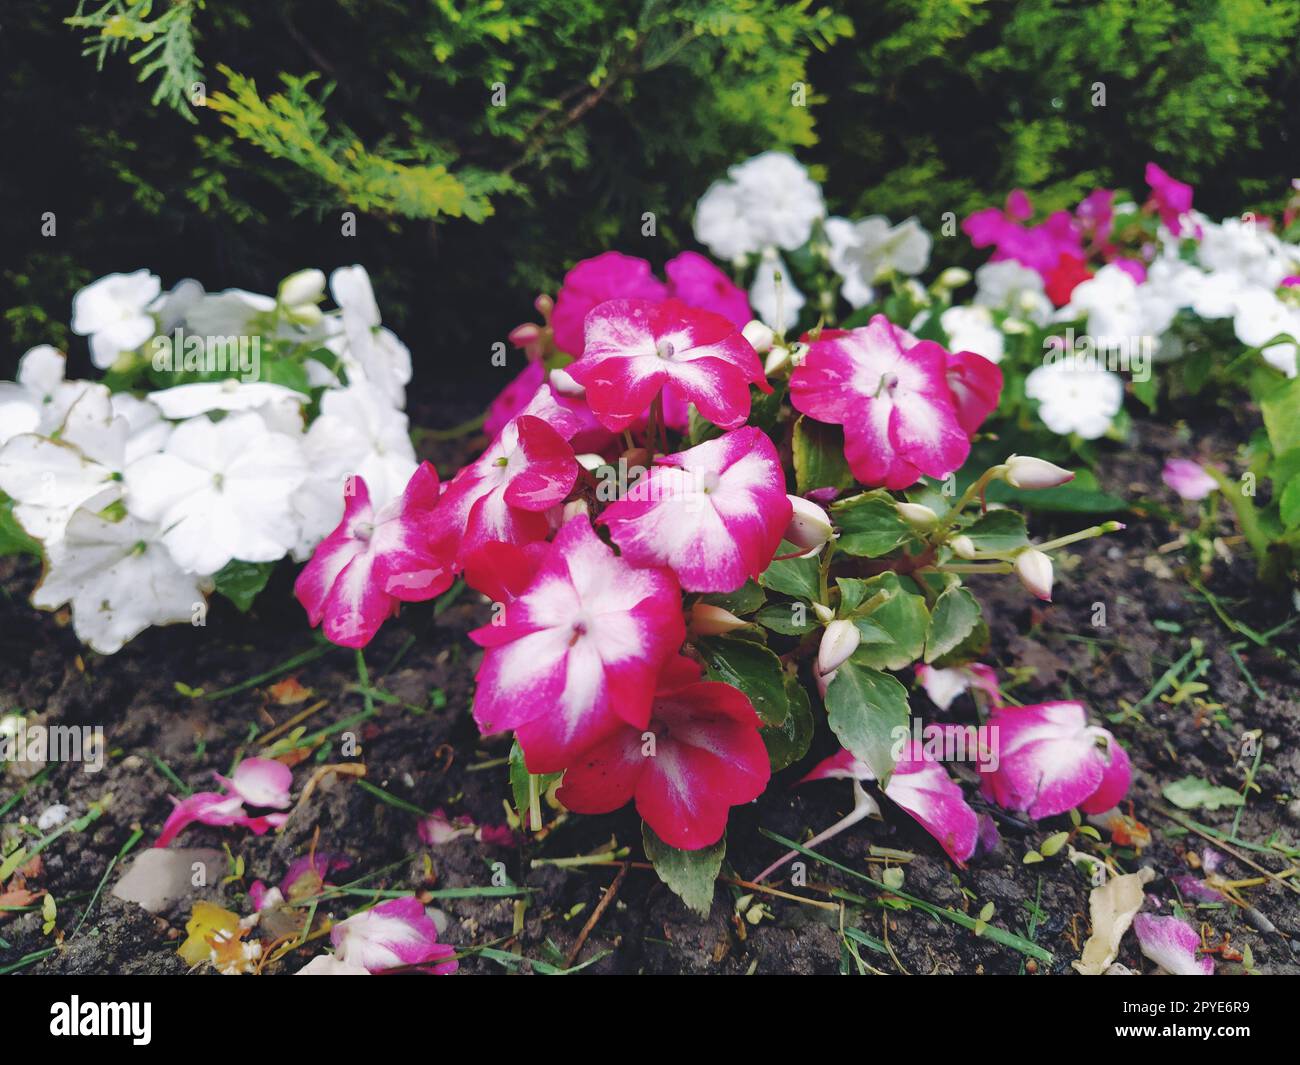 Petunia ist eine Gattung von Stauden- oder Strauchpflanzen der Familie der Solanaceae. Eine Ziersorte, die jährlich als Petunia hybrida oder Petunia Garden angebaut wird. Weiße und rosa gestreifte Blumen Stockfoto